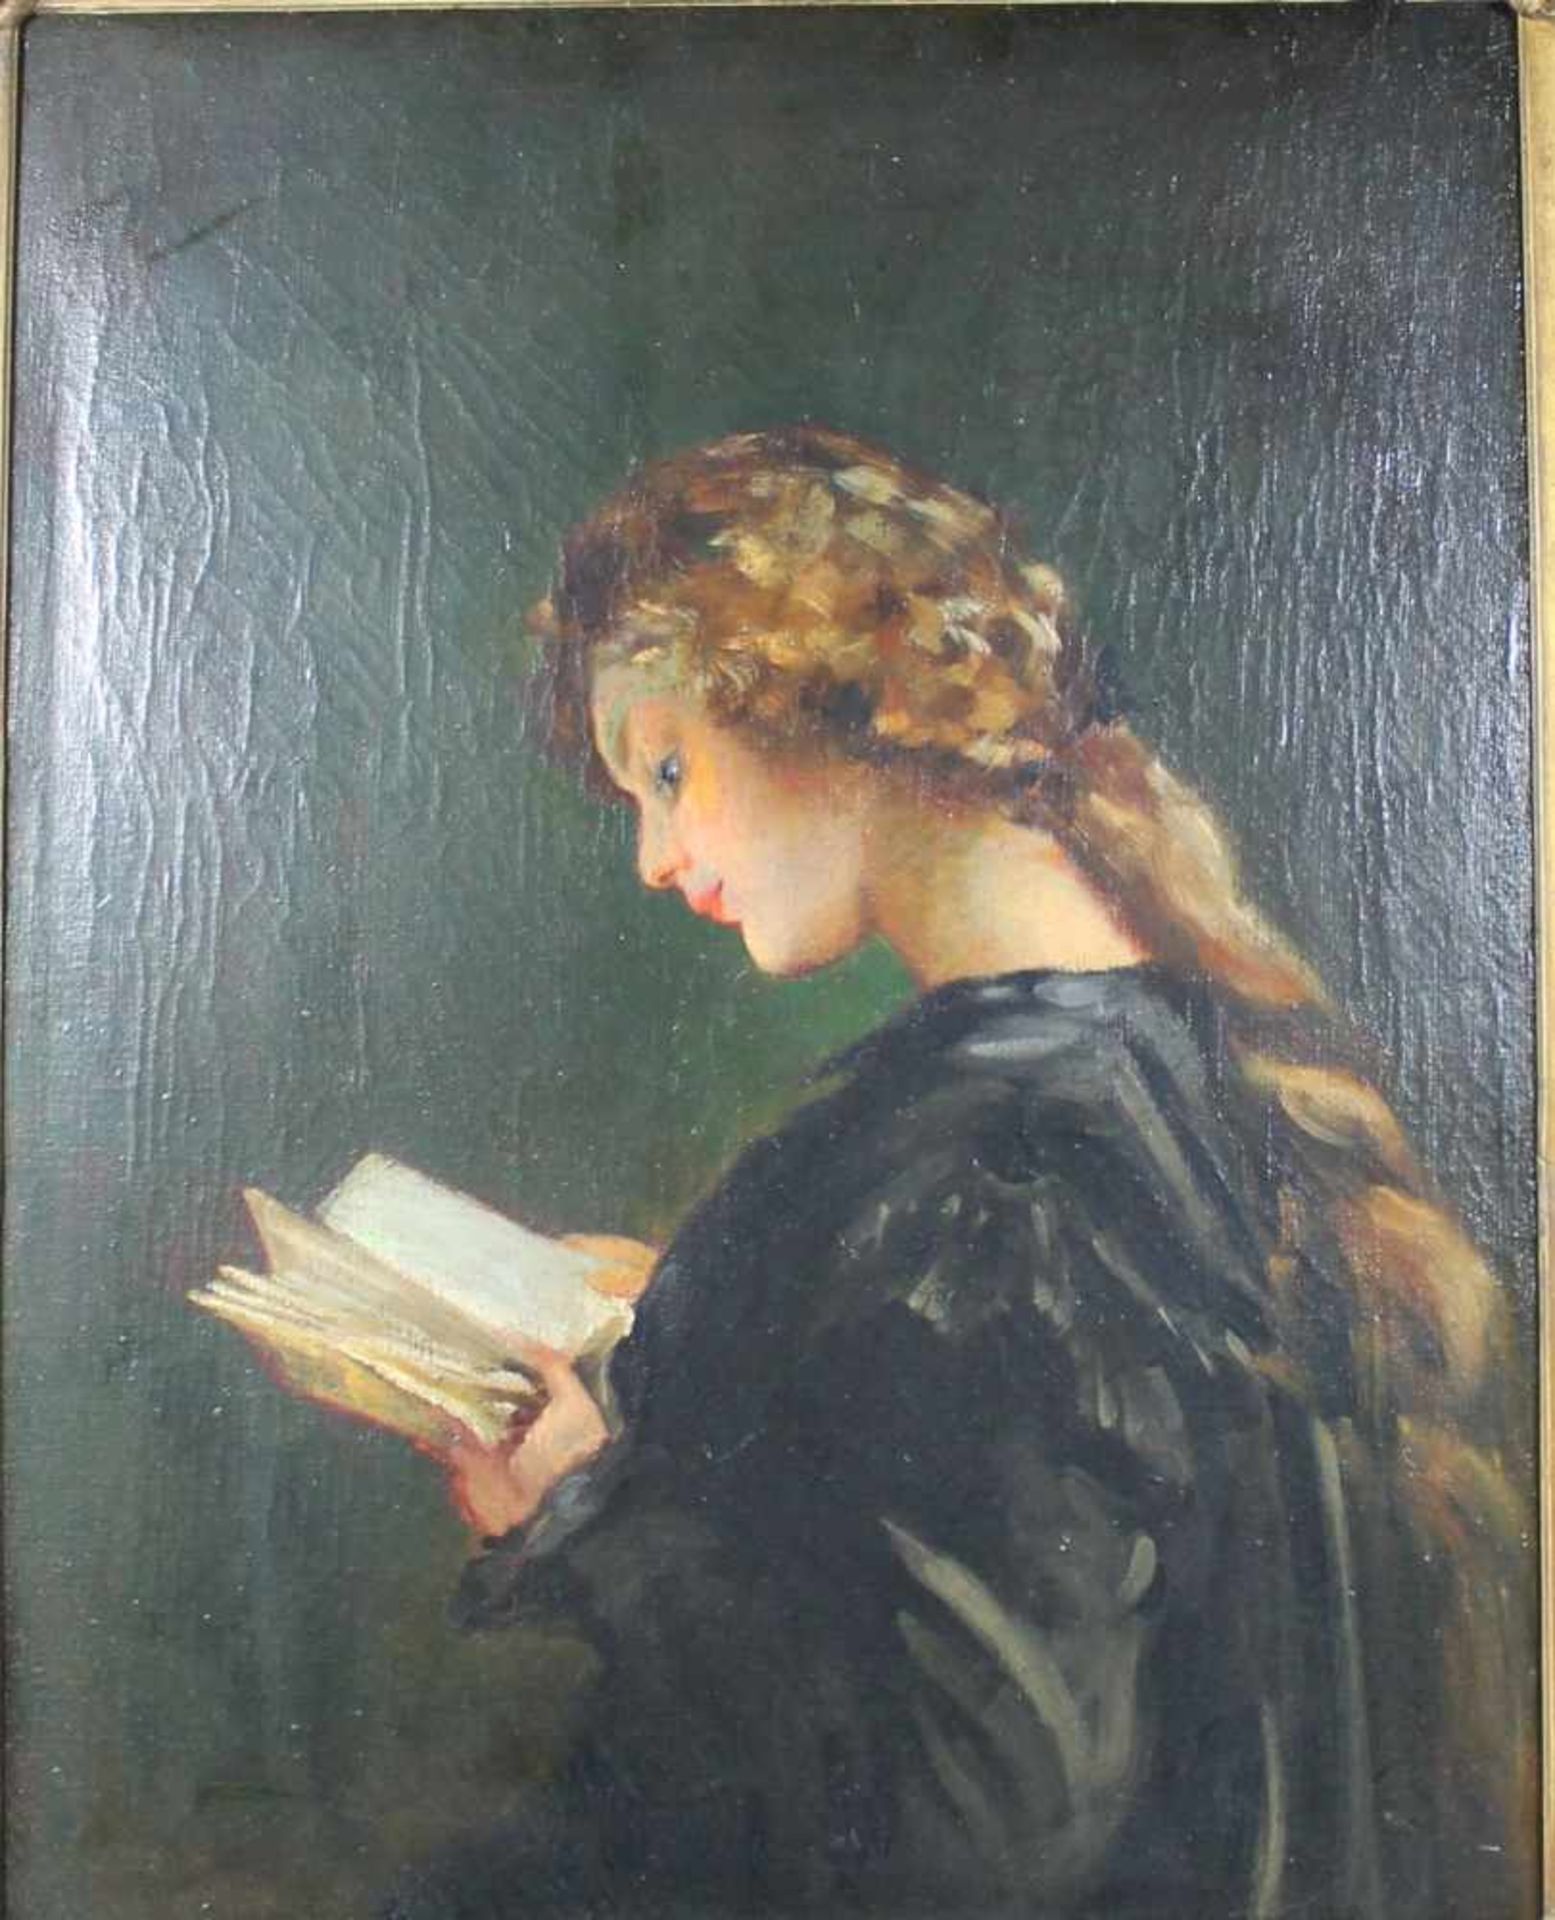 1 altes Ölbild auf Leinwand "lesendes Mädchen", keine Signatur erkennbar, ca. 58cm x 45cm ( - Image 2 of 2